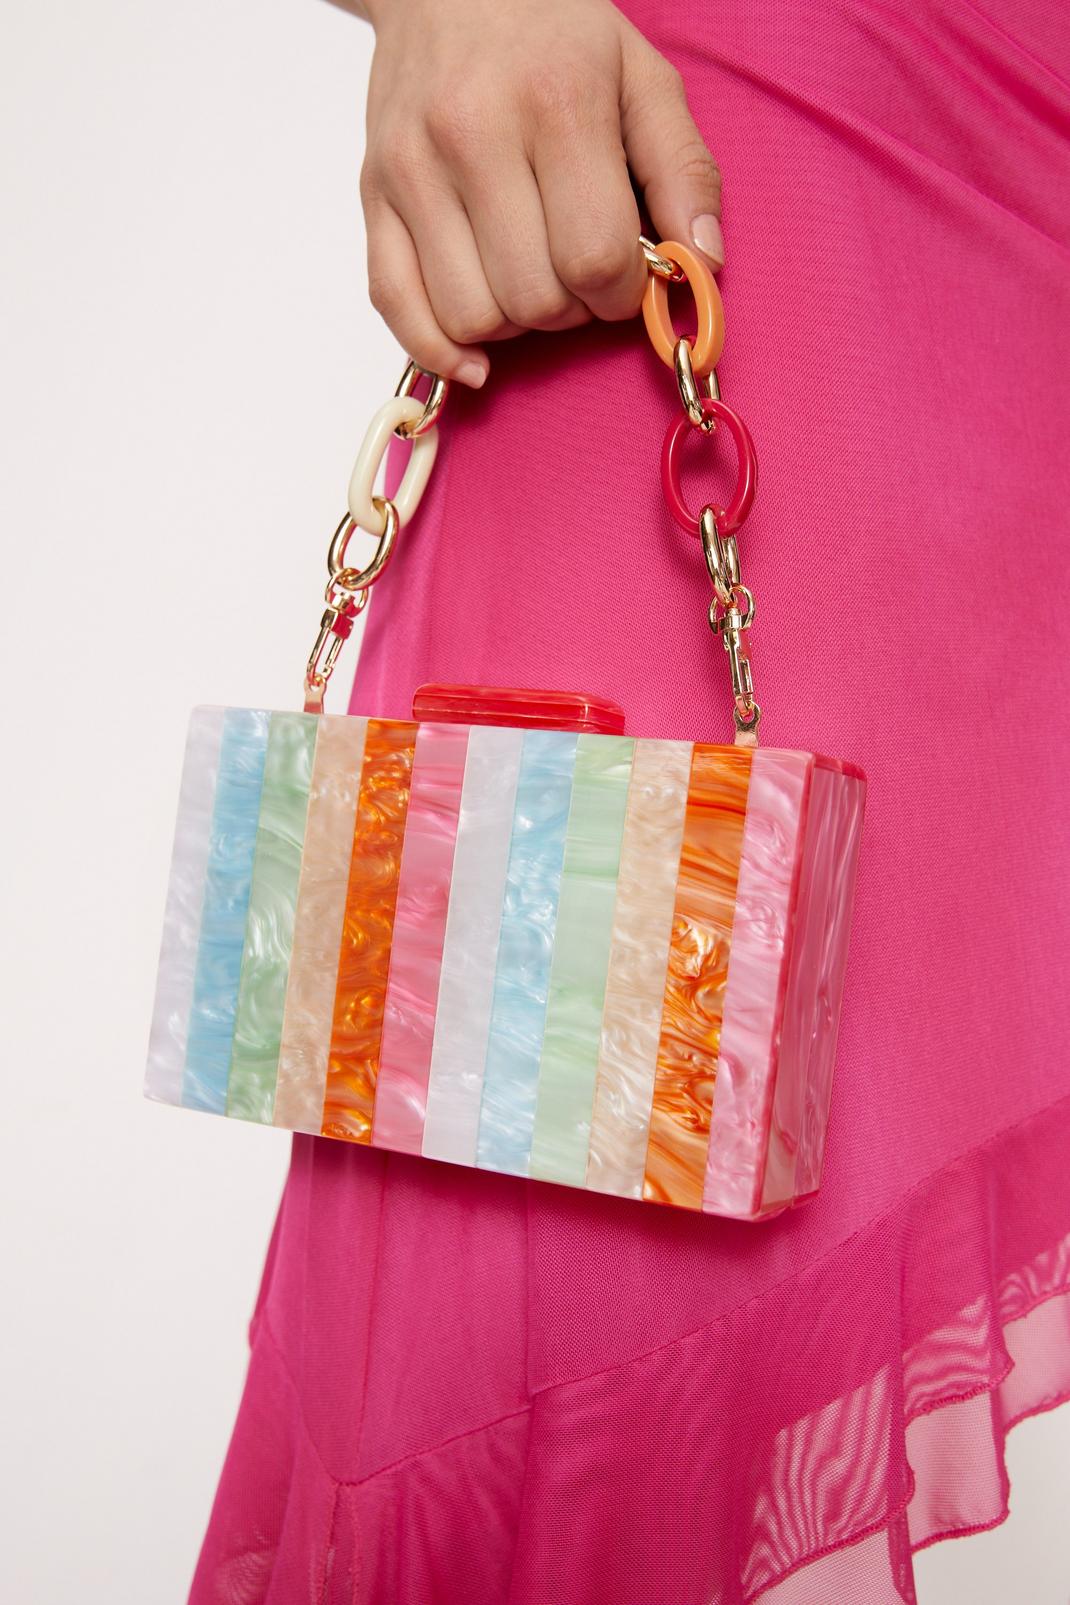 The Mini Clutch Bag In Multi-colored